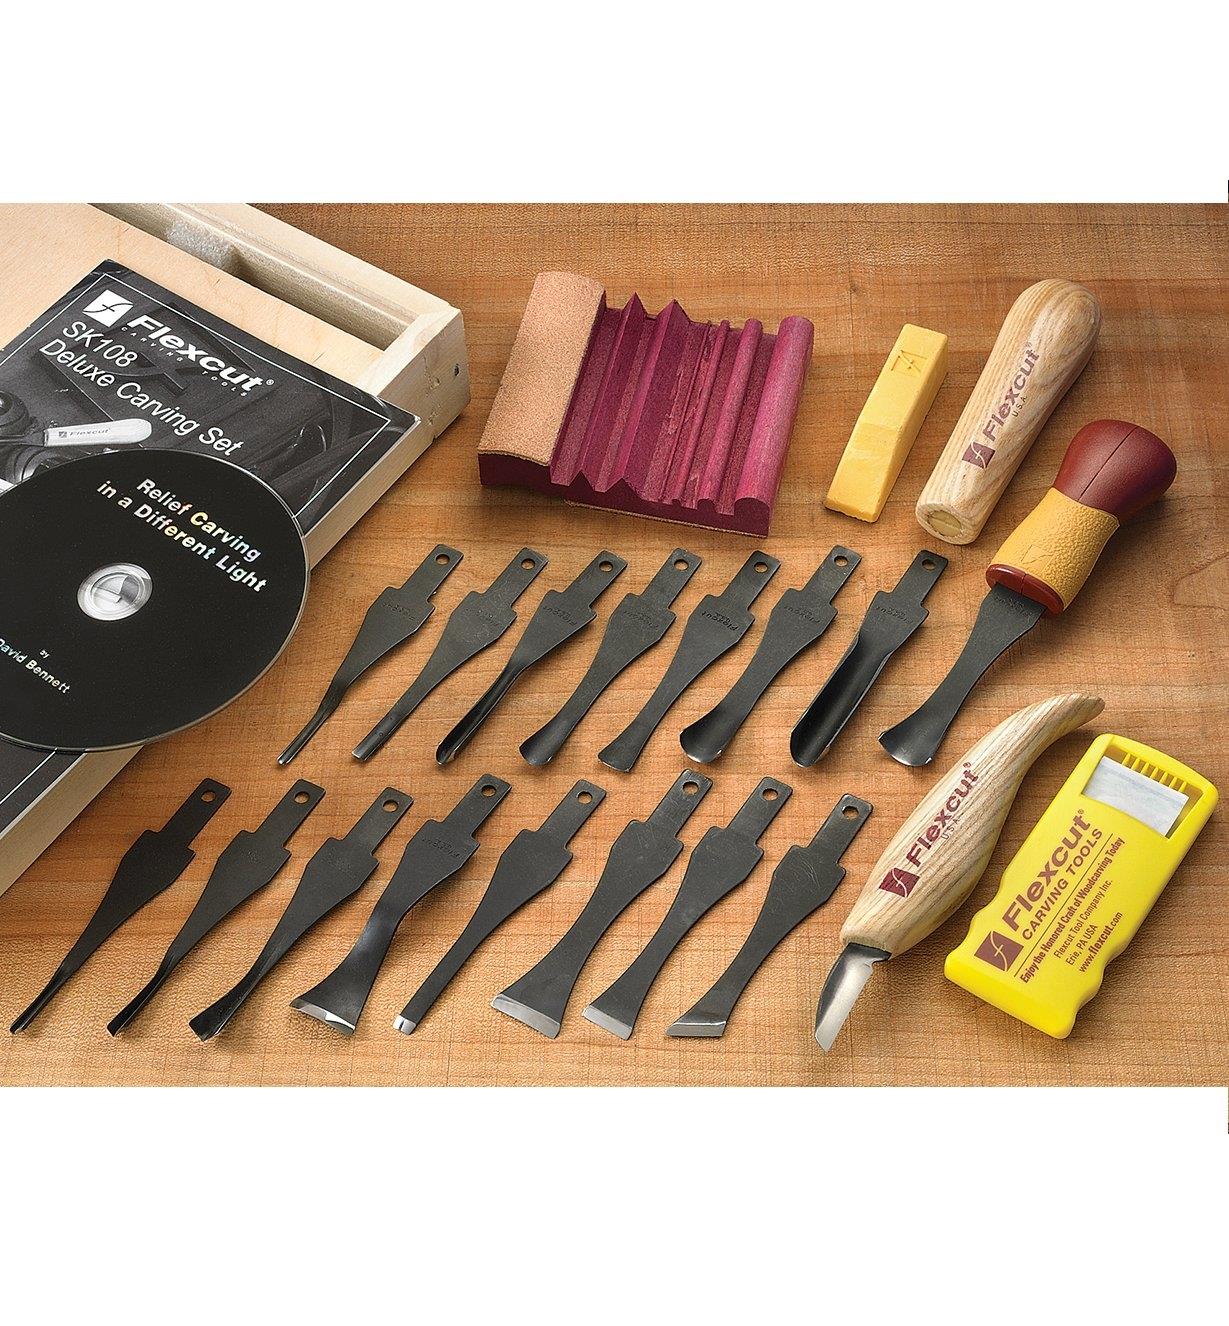 06D0508 - Ensemble de sculpture Flexcut de 21 outils et d'accessoires